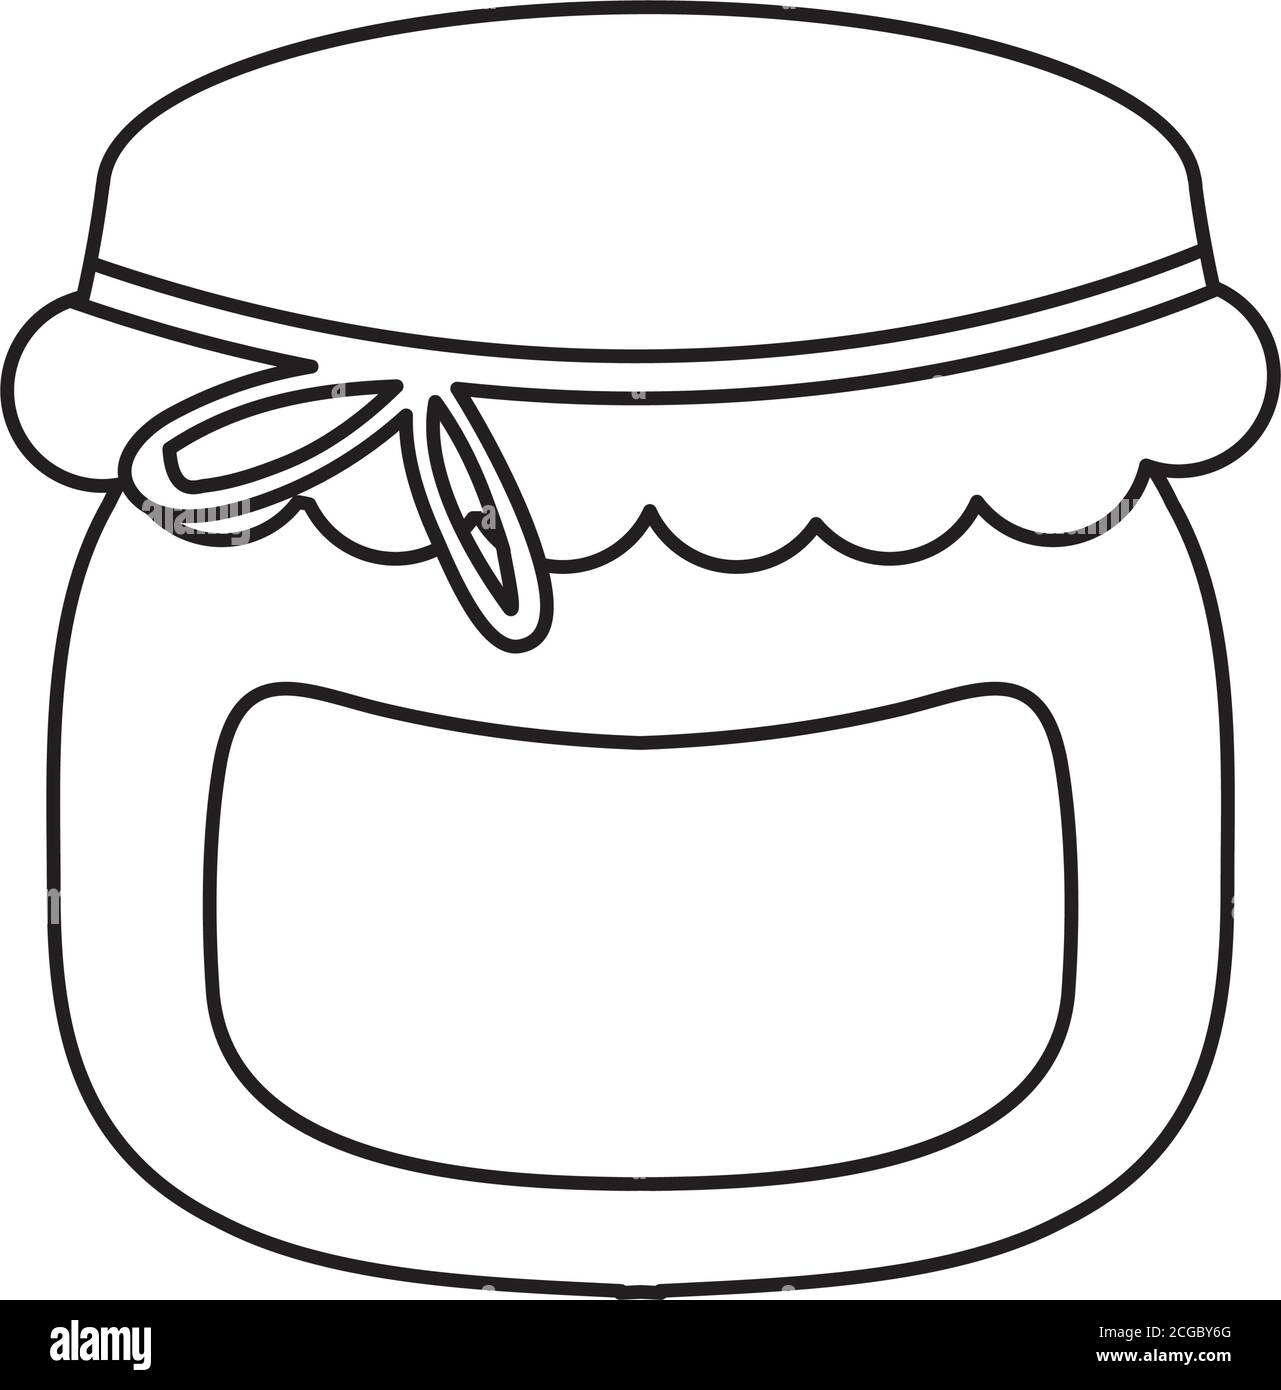 honey bottle icon over white background, line style, vector illustration Stock Vector